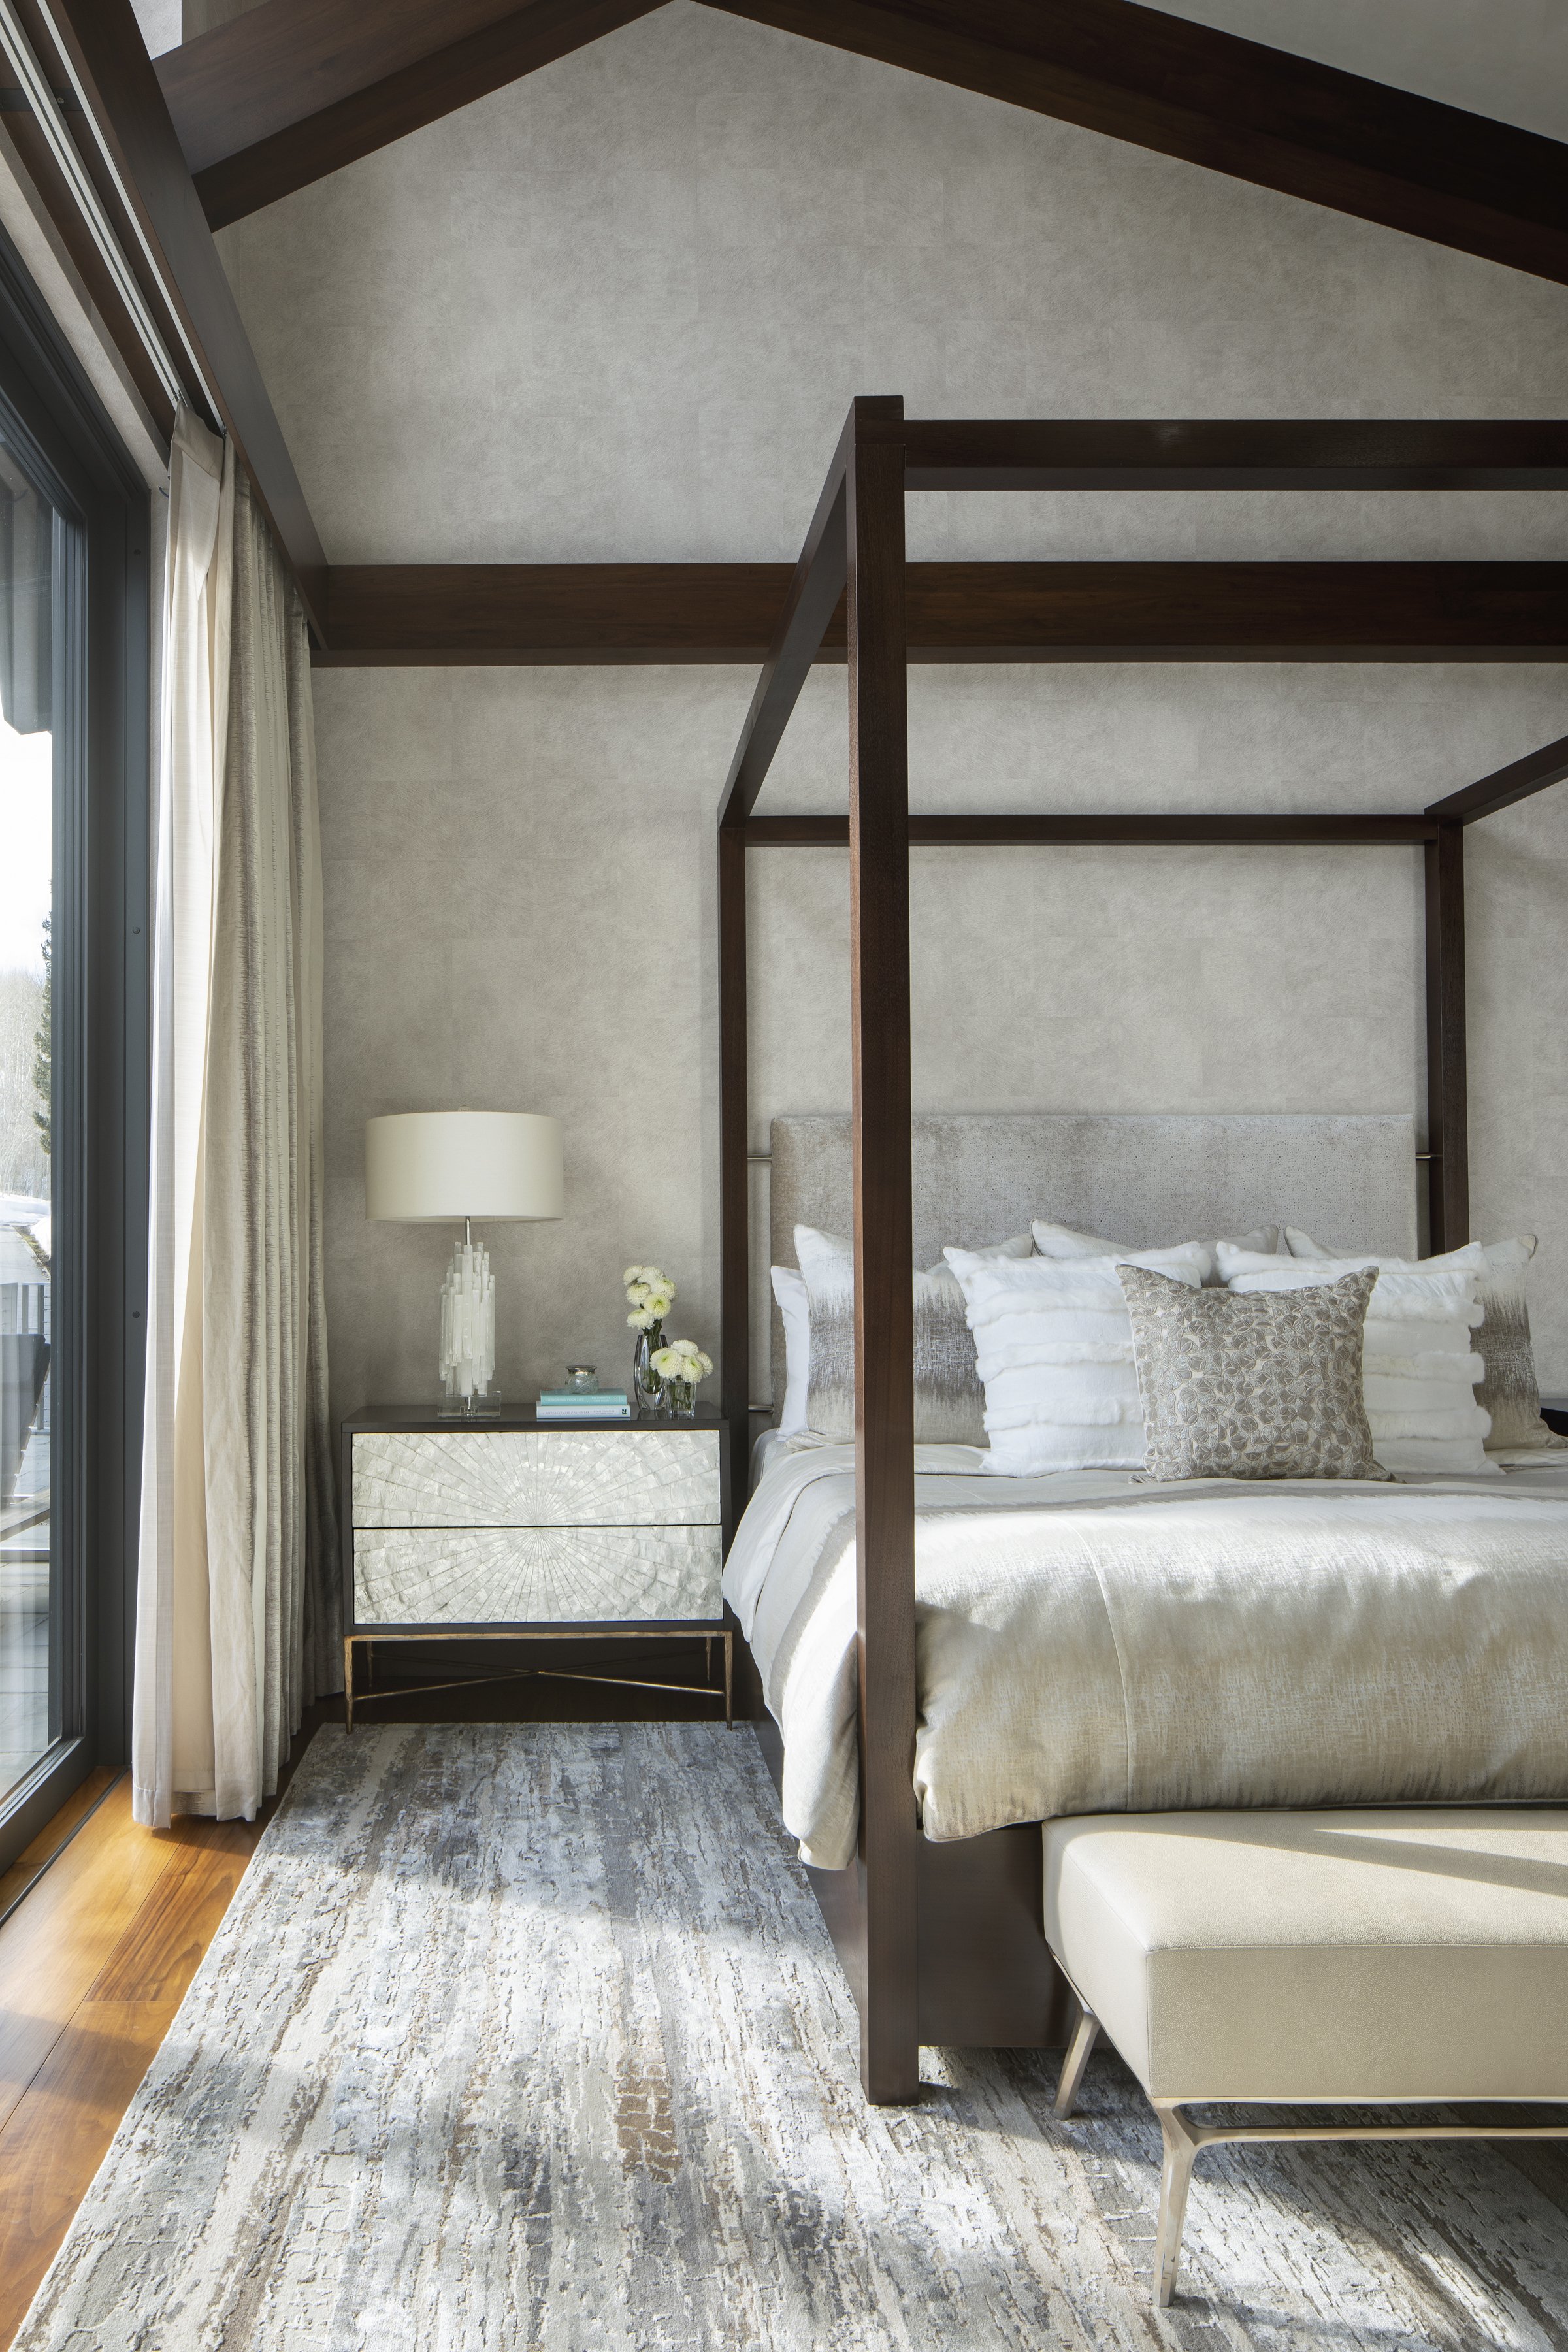 8-simple-wood-light-bedroom-various-prints-highceiling-relaxing-vail-interiordesigns.jpg